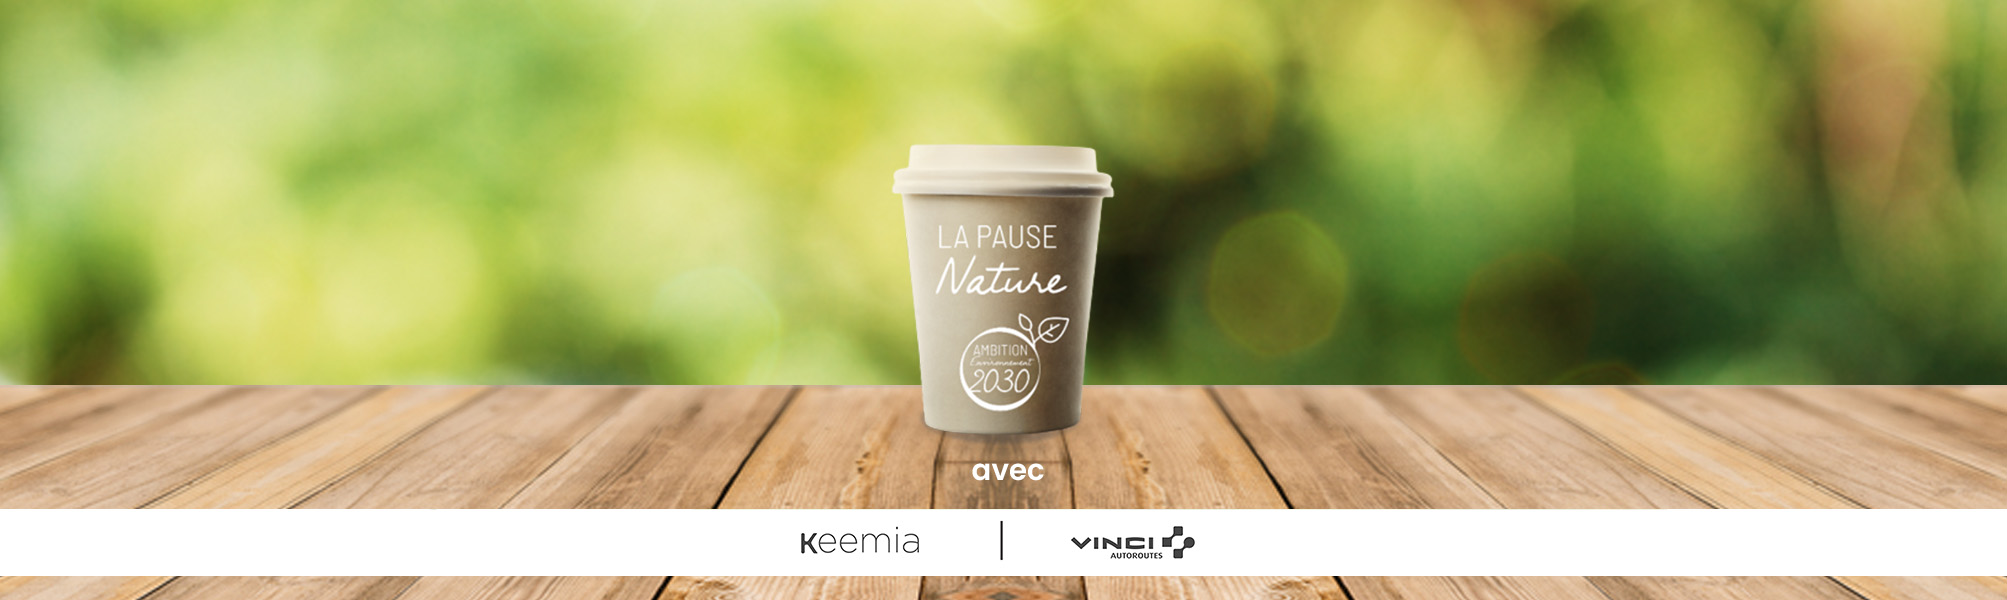 Offre Vinci Autoroutes - Keemia Shopper Marketing - Agence d'activation shopper marketing phygitale